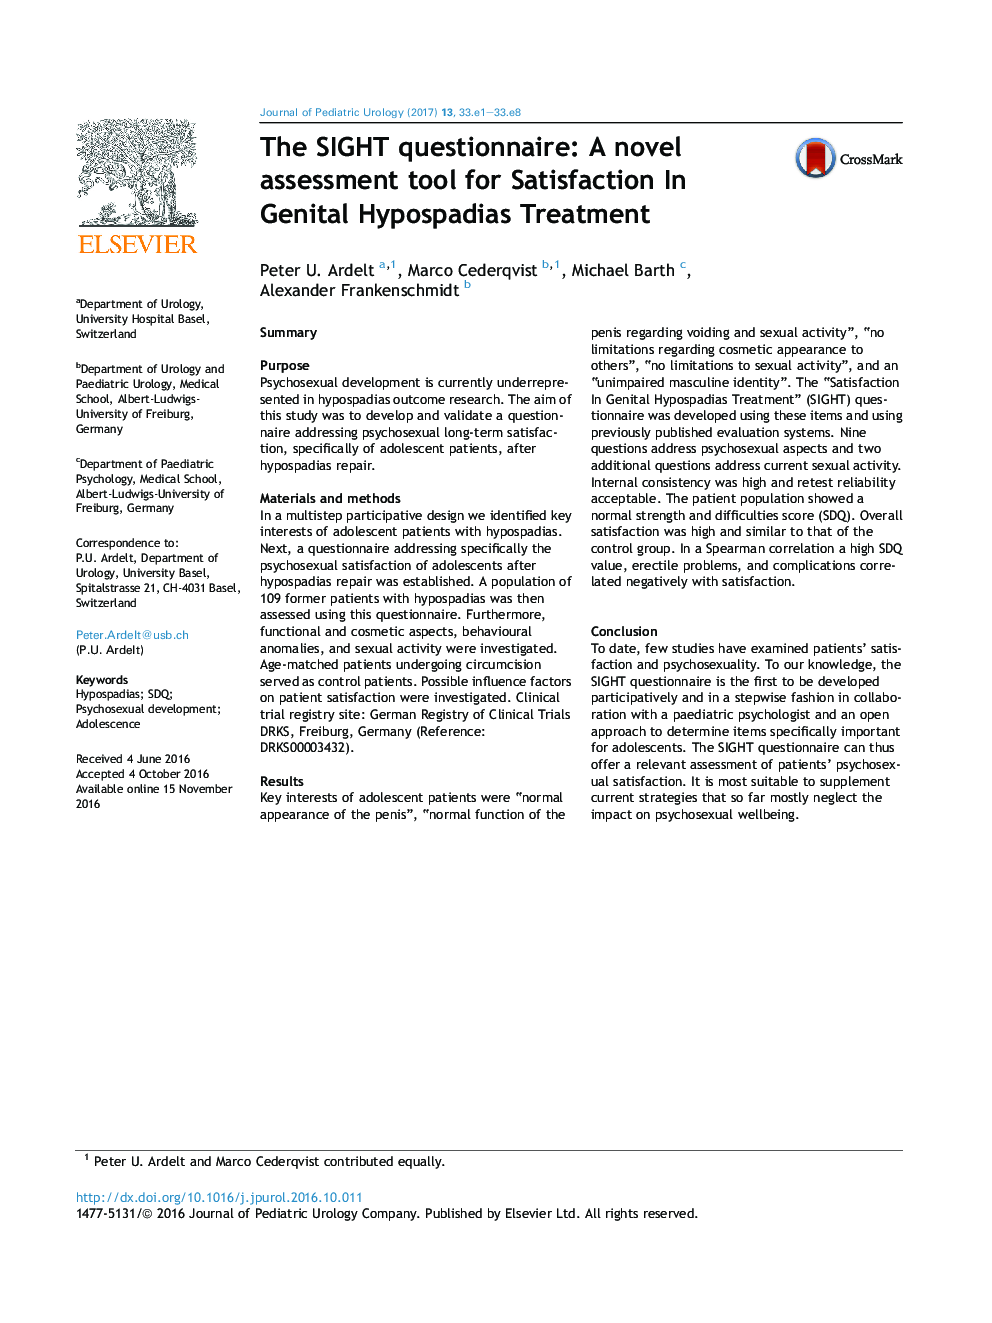 پرسشنامه سؤال: یک ابزار ارزیابی جدید برای رضایت در درمان هیپوسپادیس تناسلی 